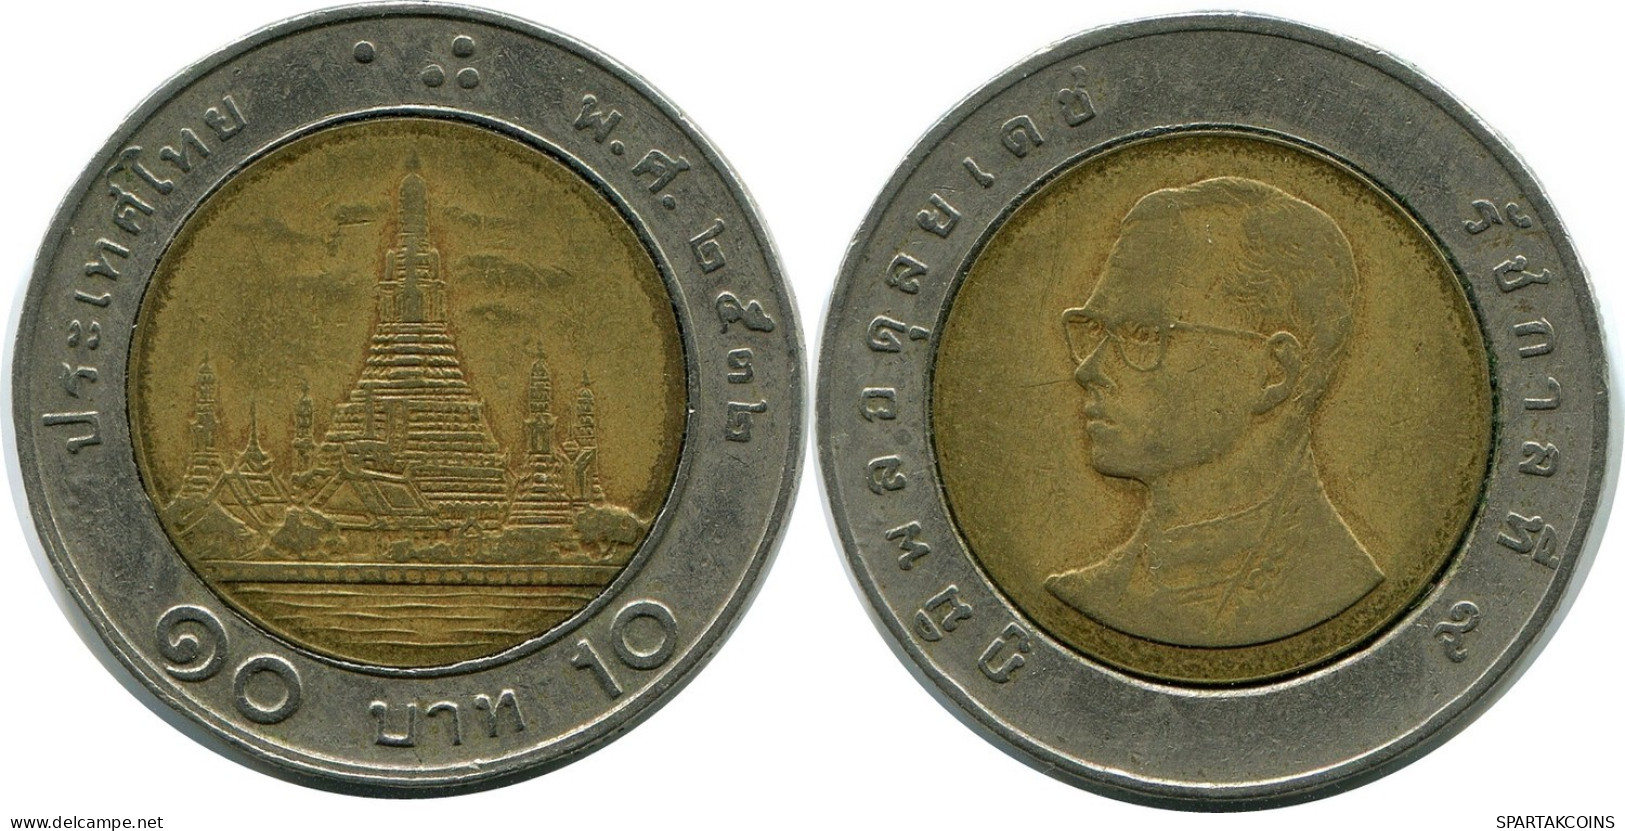 10 BAHT 2003 THAILAND BIMETALLIC Coin #AR214.U.A - Thailand